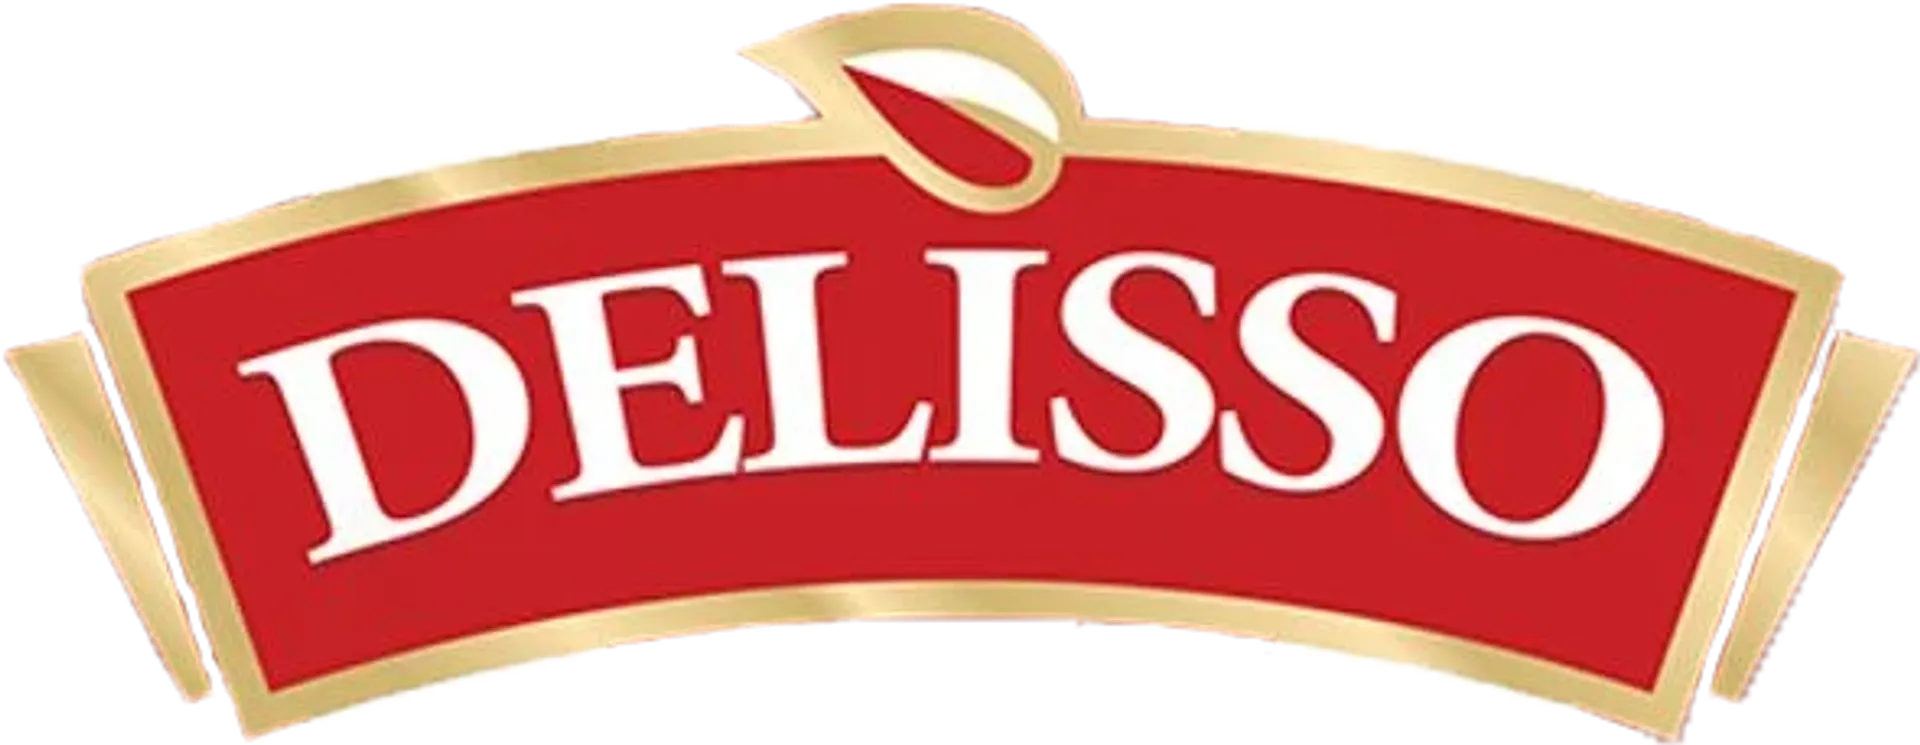 DELISSO  logo